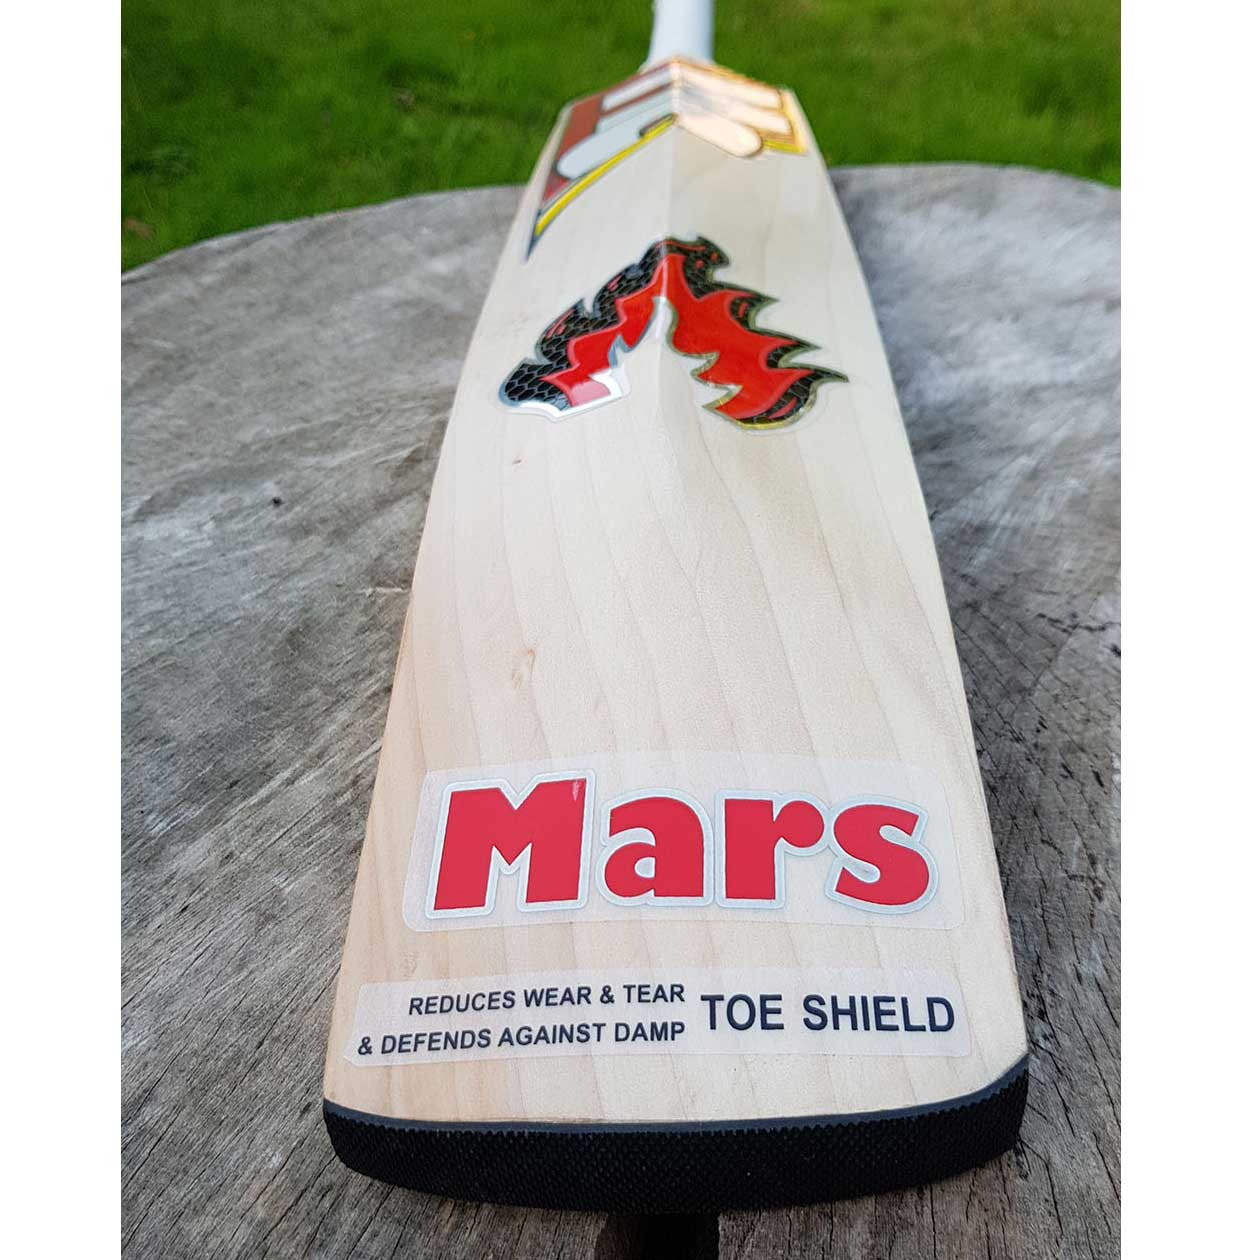 Mars Cricket